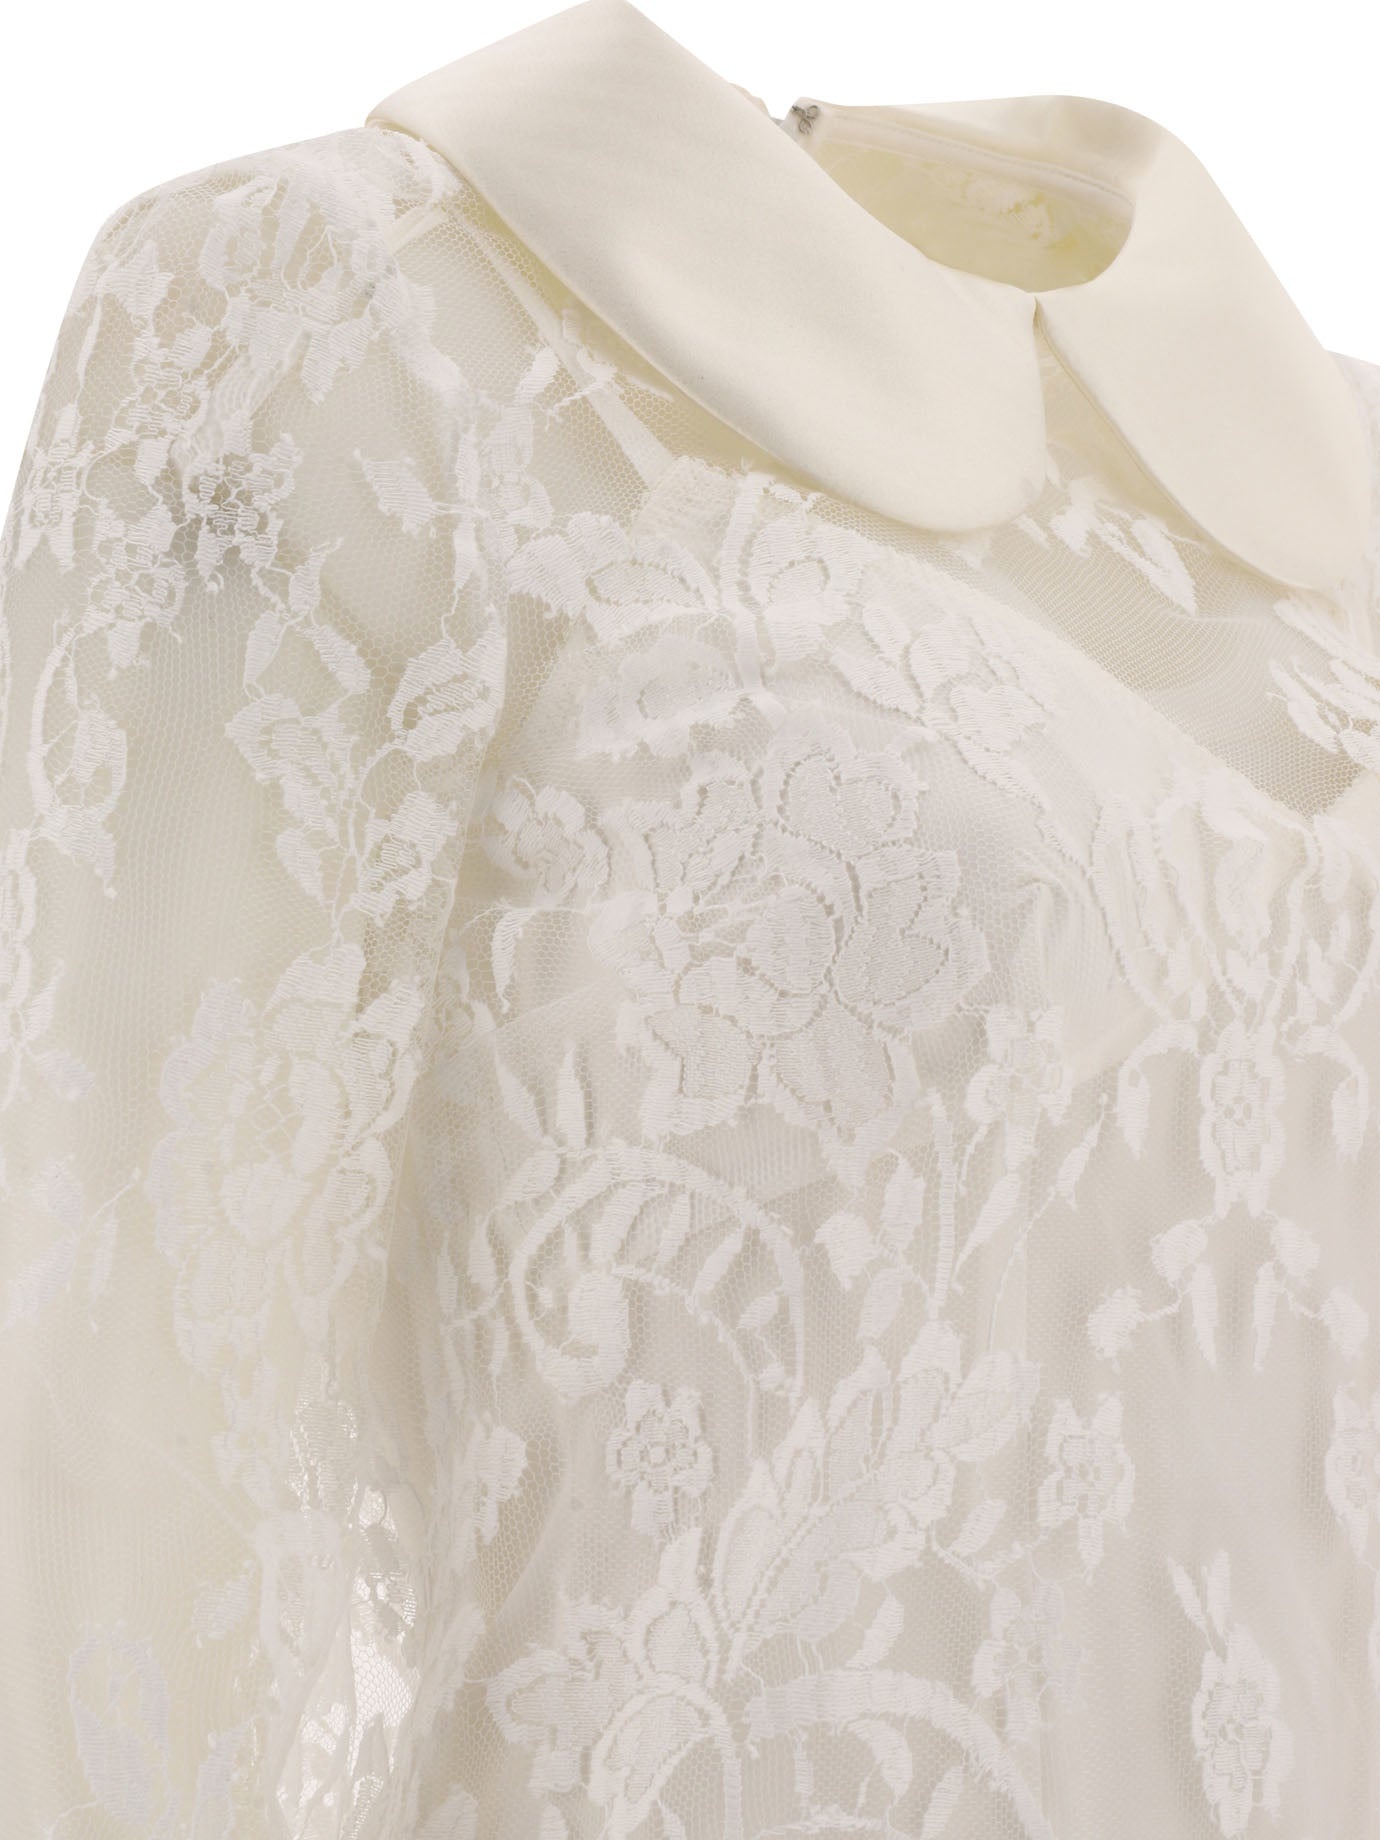 Dolce & Gabbana Lace Dress With Satin Collar - 4